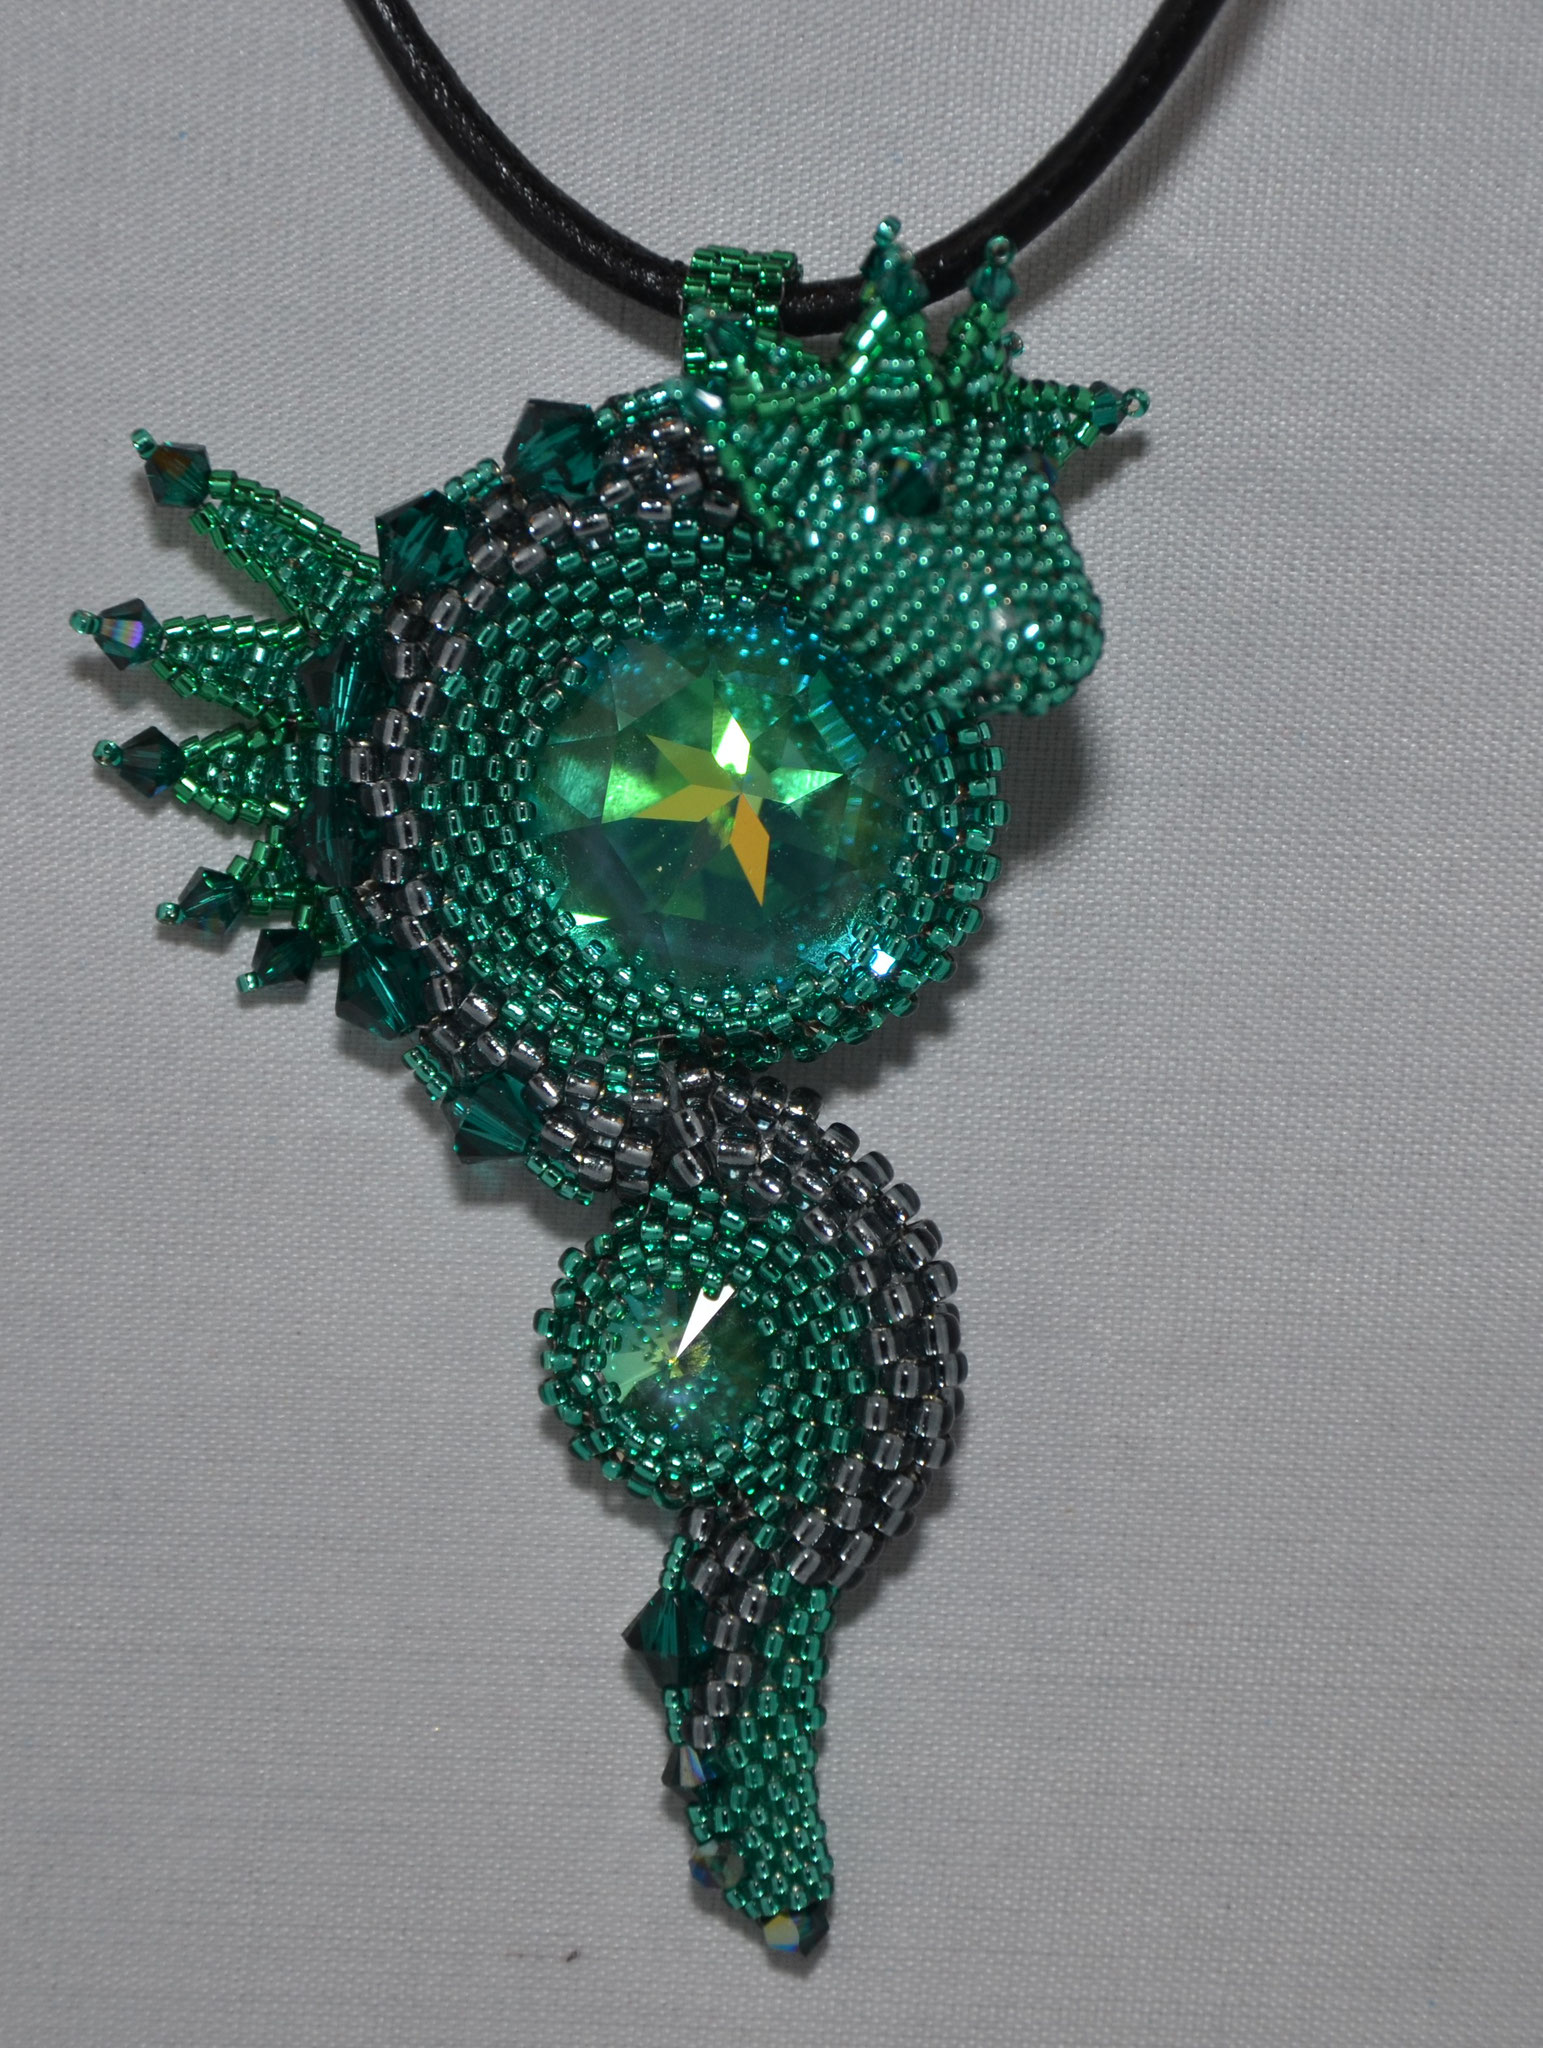 Drache, Farbe: Emerald grün, Größe: H 10cm, B 6cm, Material: Swarovski-, Miyuki Steine, Gewicht: 22 Gramm